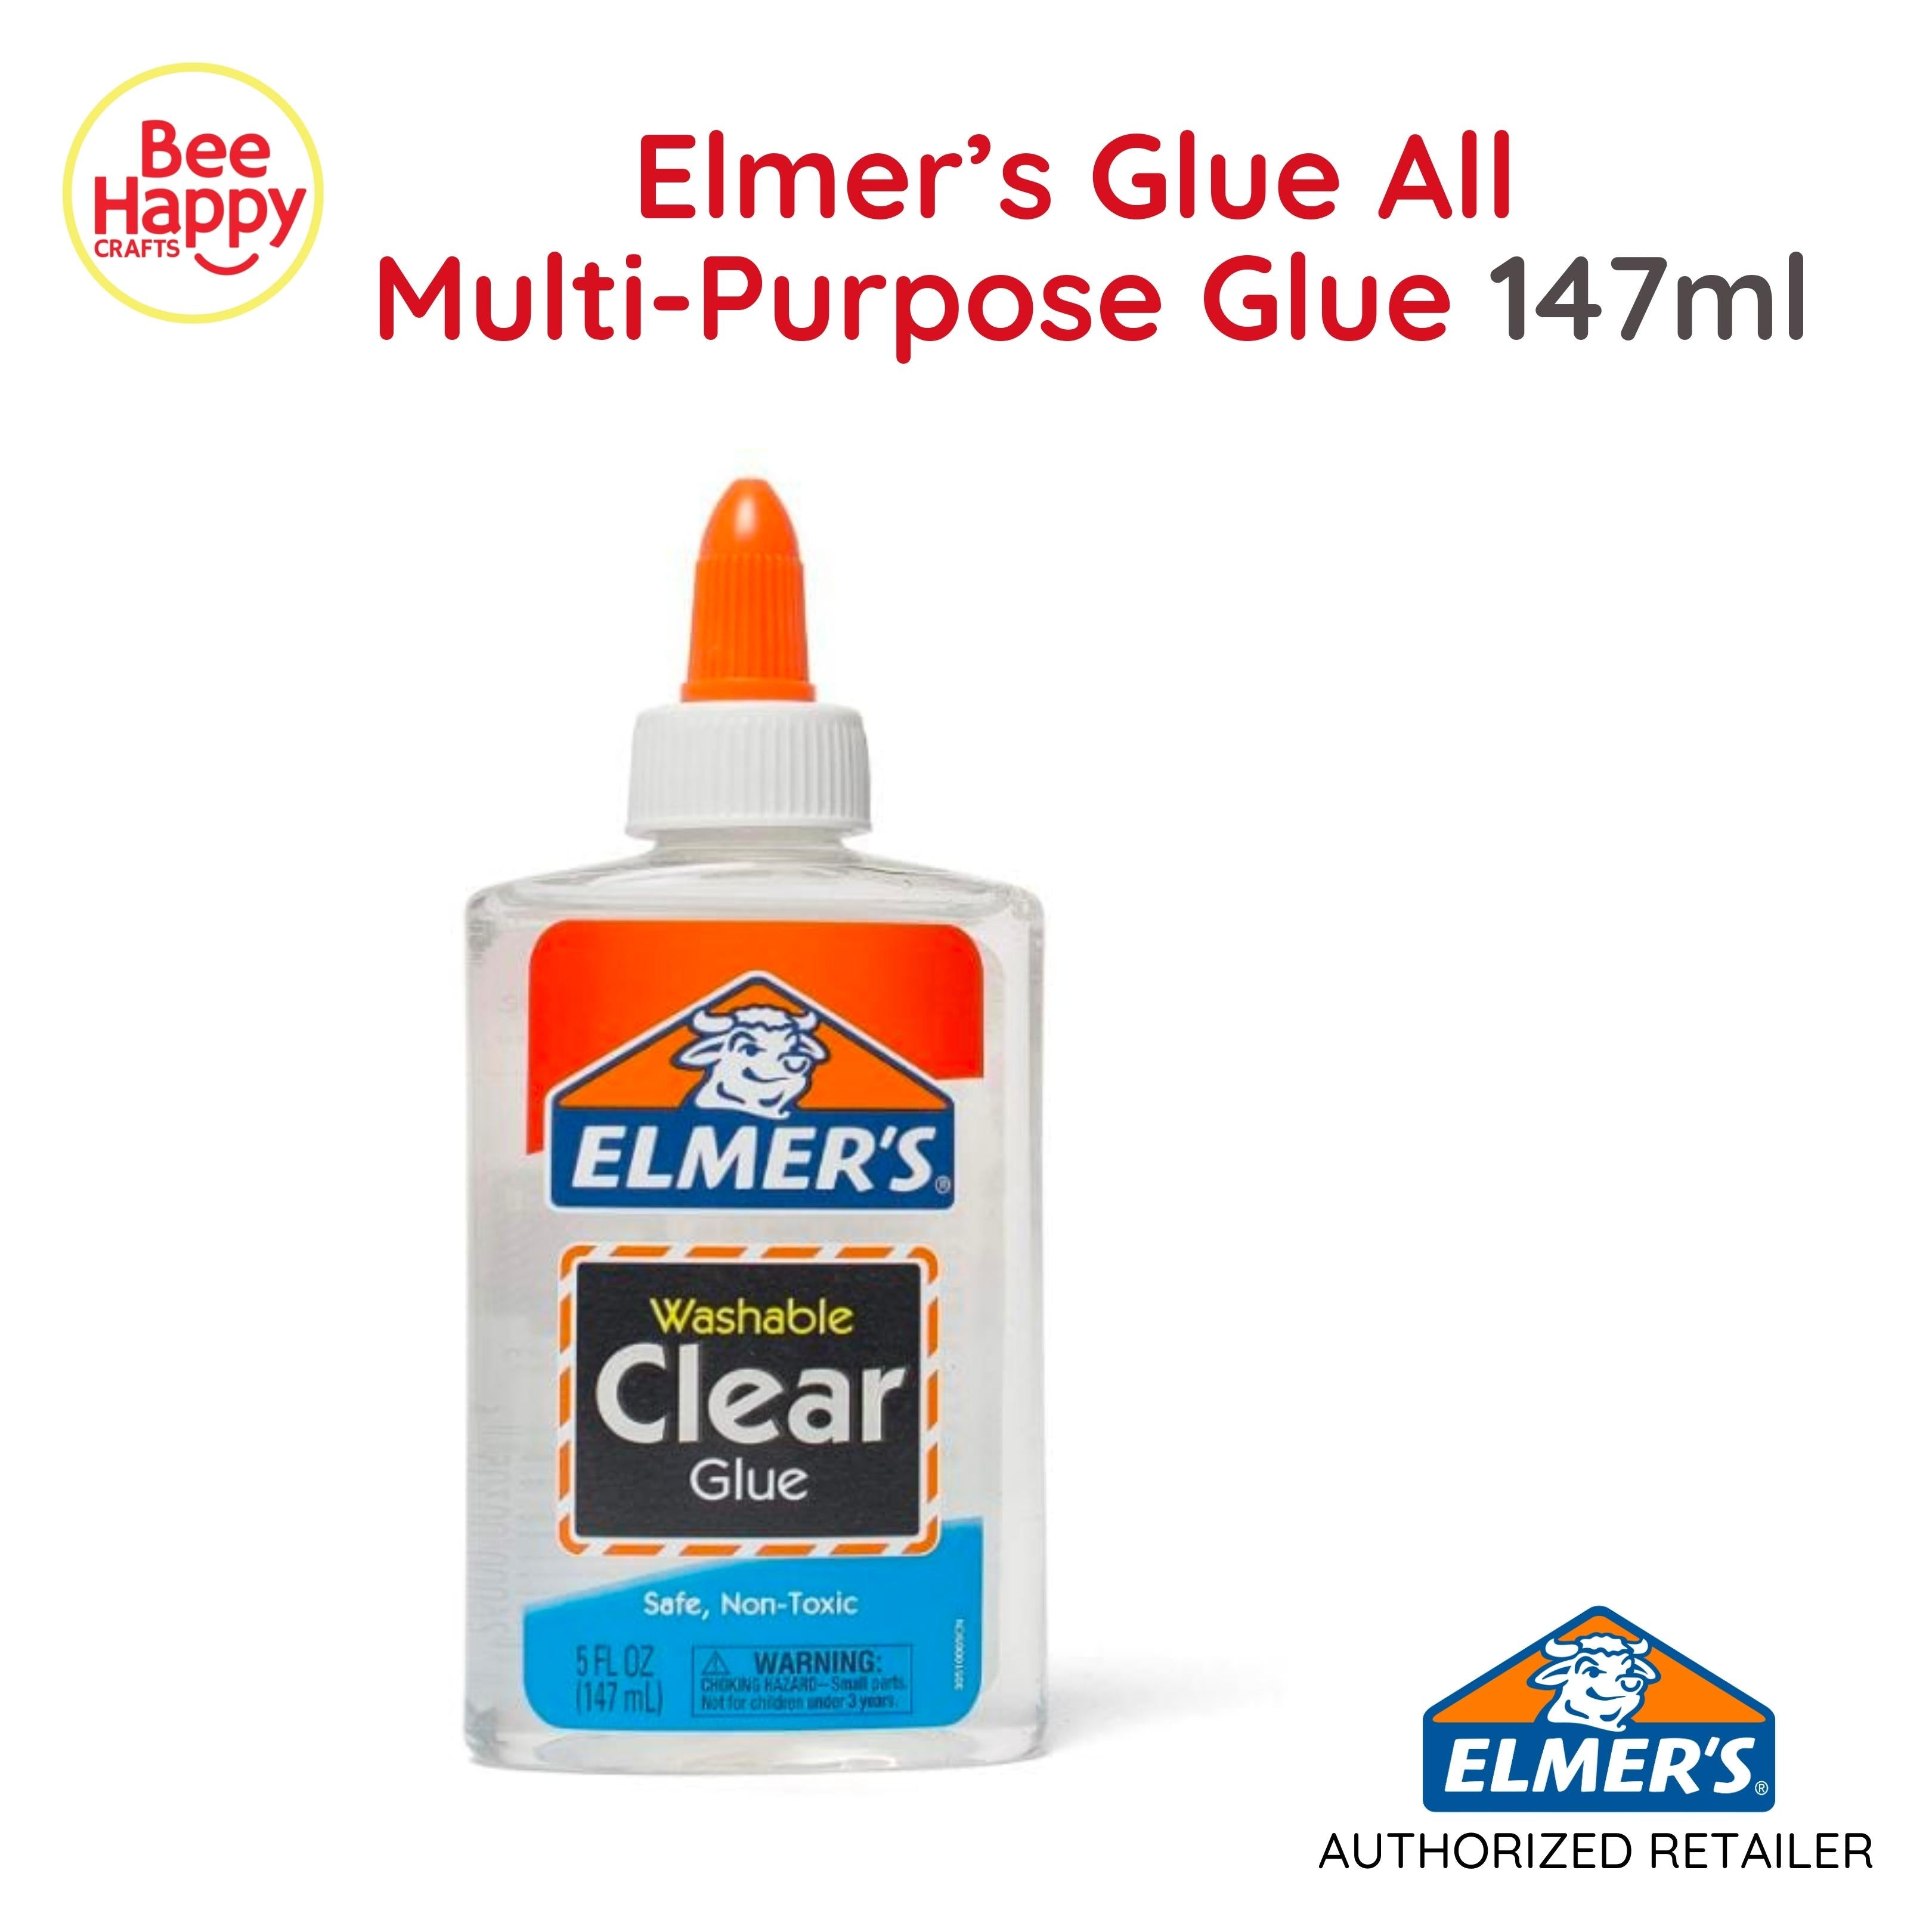 Elmer's Glue-All, Multi-Purpose Glue, Safe & Non-Toxic, Dries Fast, 4oz  Bottle